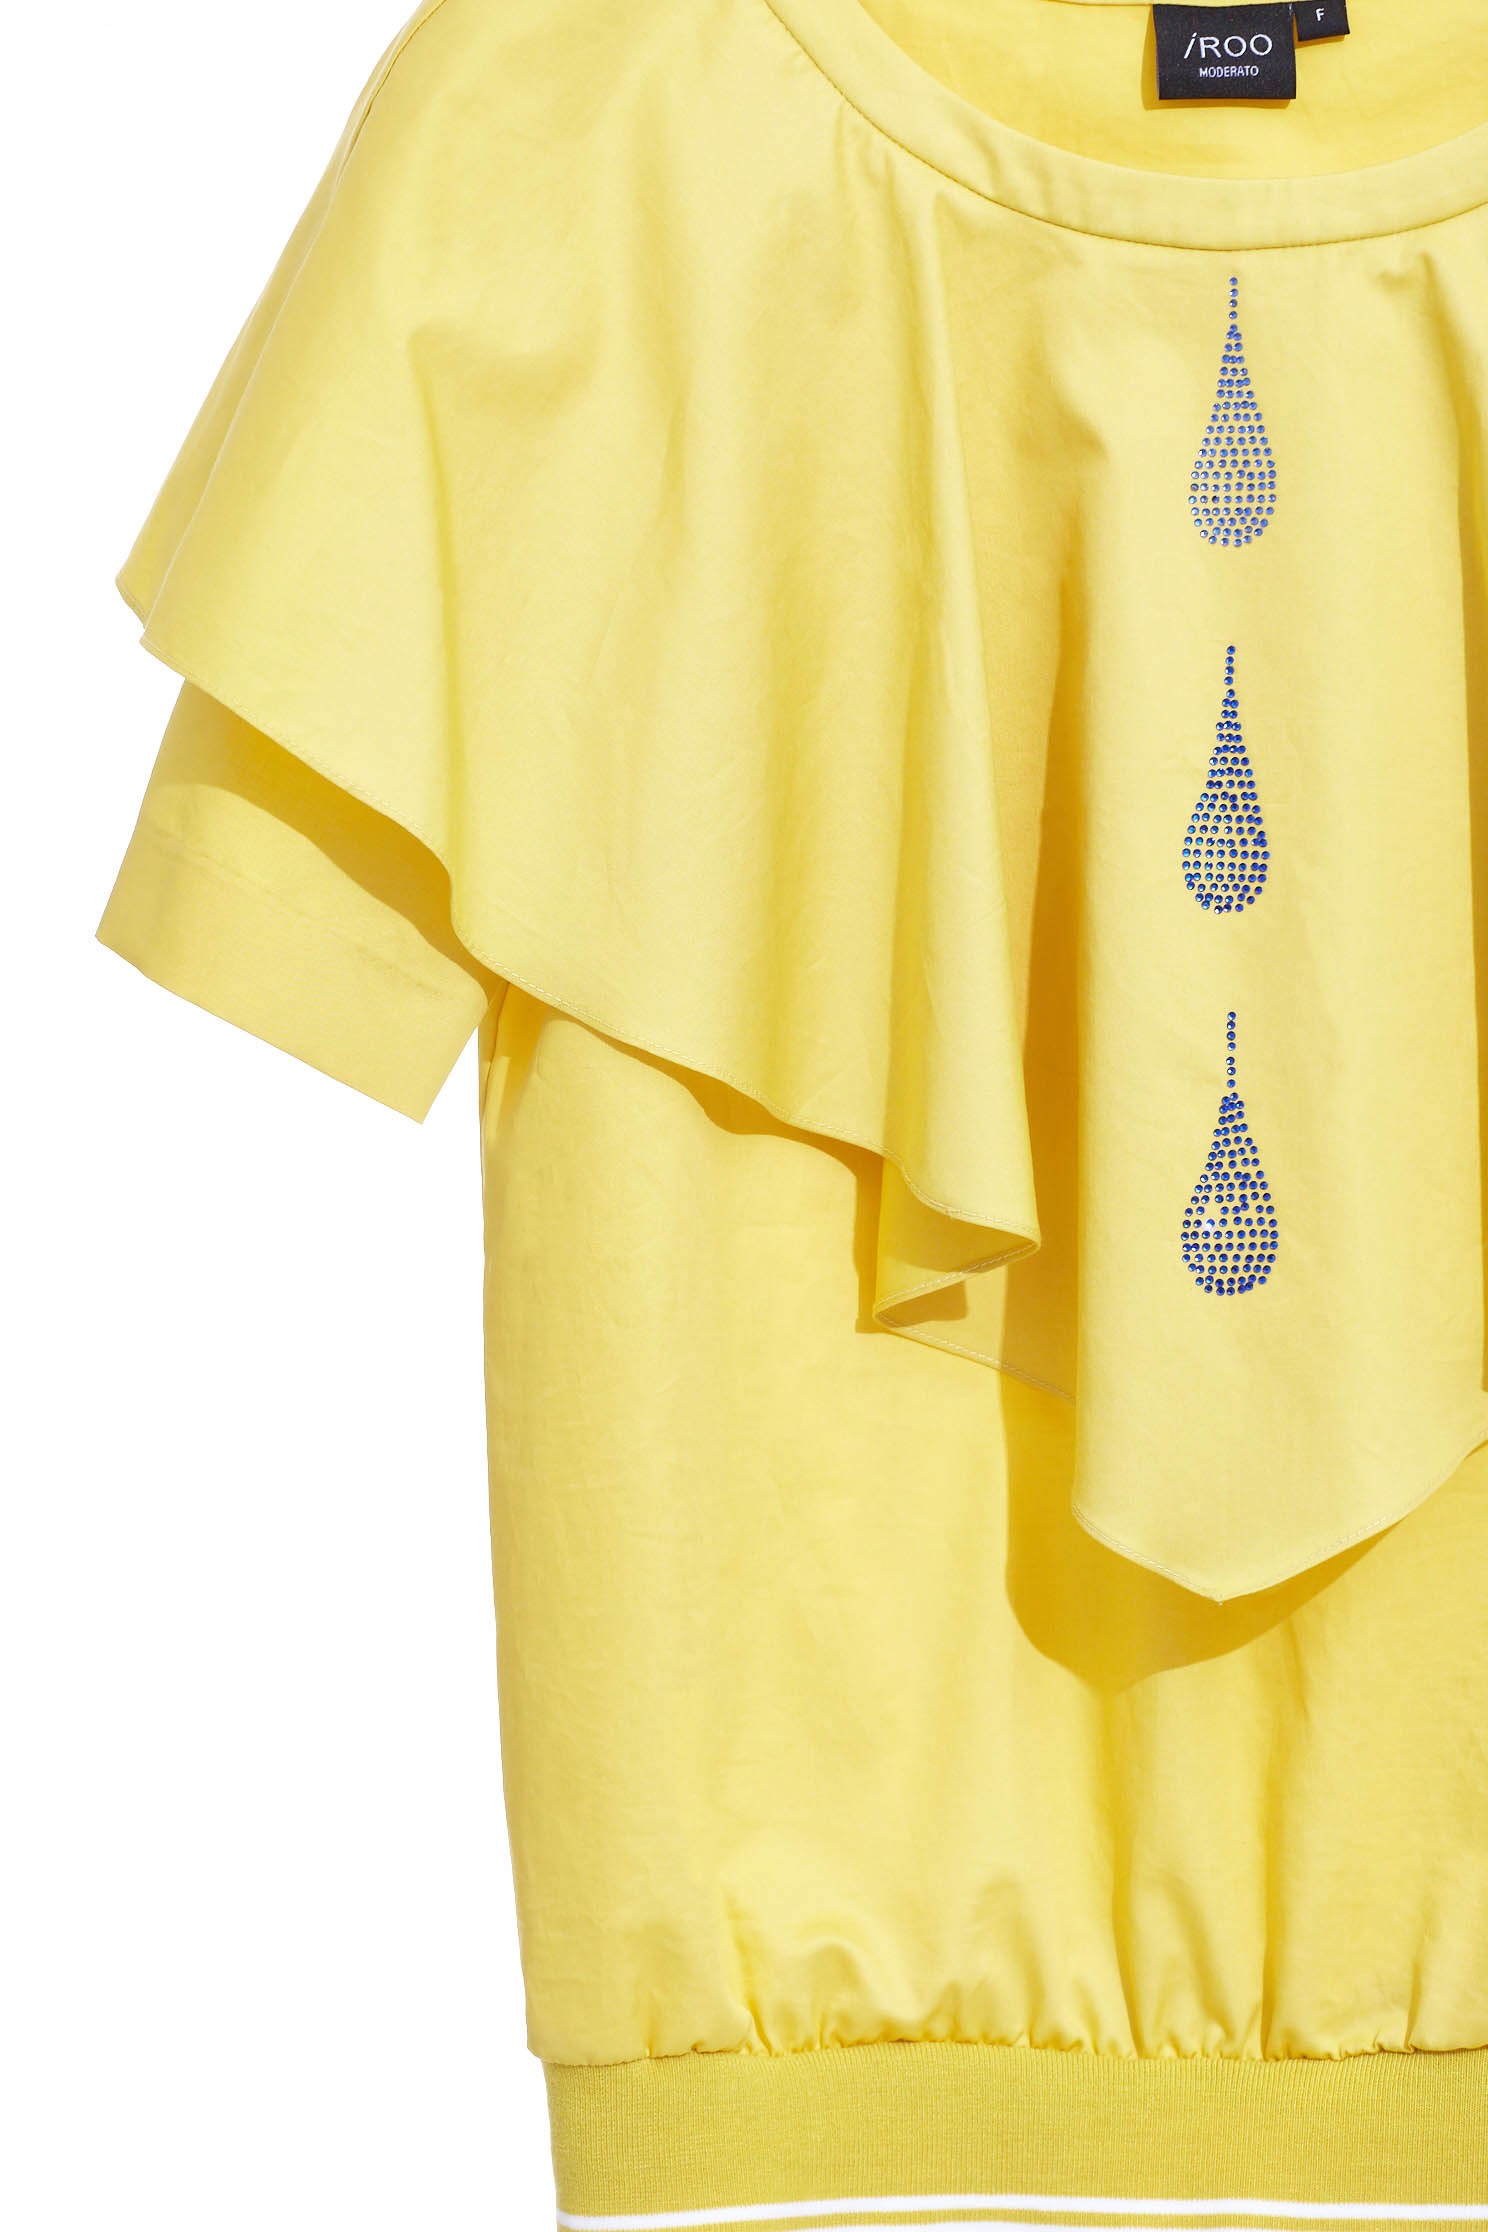 黃色大荷葉水滴流行造型短袖上衣黃色大荷葉水滴流行造型短袖上衣,上衣,春夏穿搭,短袖上衣,荷葉